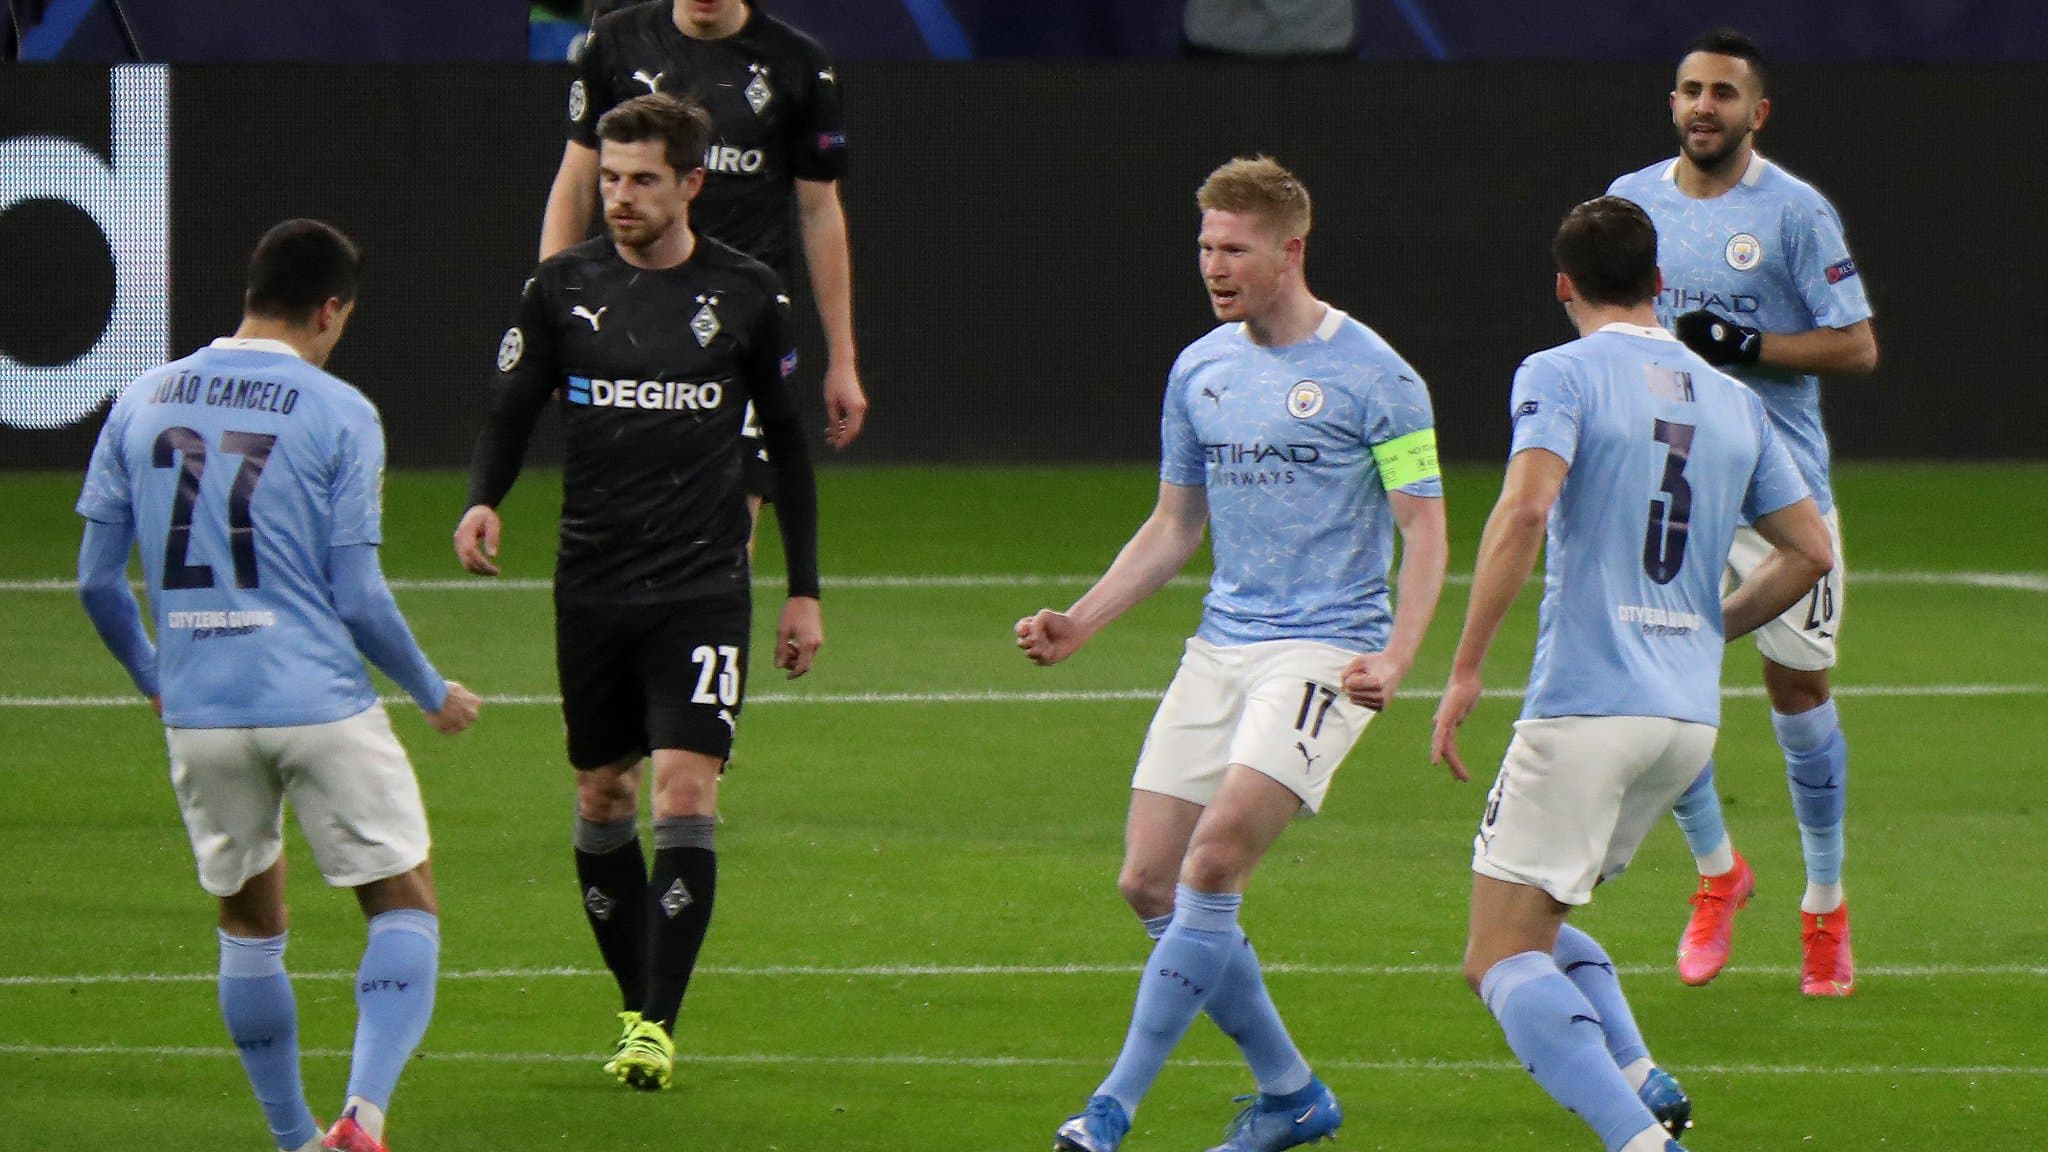 (Résumé) Ligue des Champions : Manchester City écarte tranquillement le Borussia Mönchengladbach et file en quarts